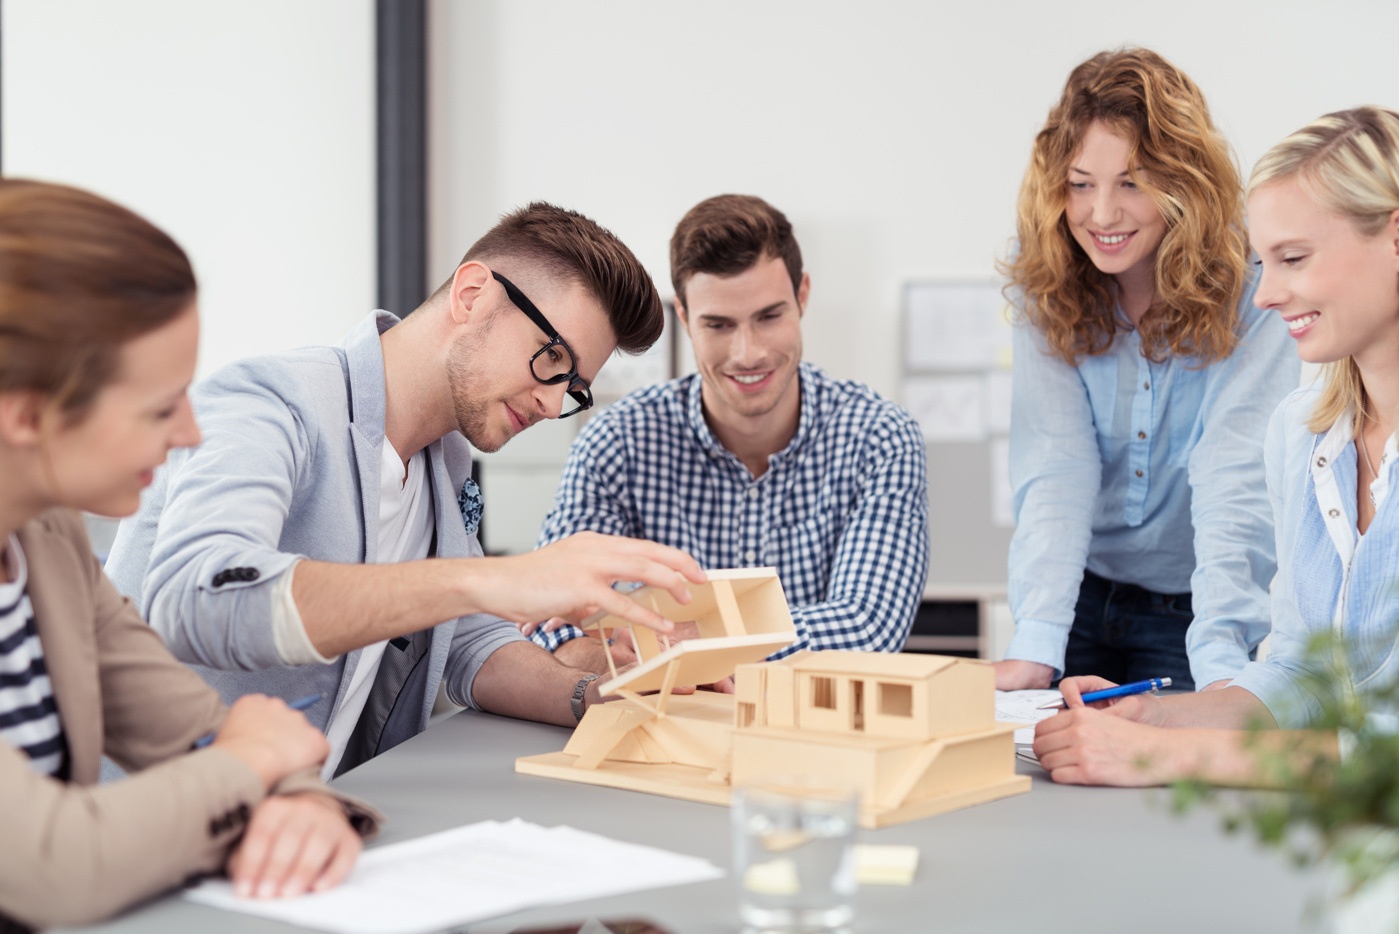 Gli studenti del corso di laurea in architettura di un'università di scienze applicate creano un modello di casa in legno per un progetto.